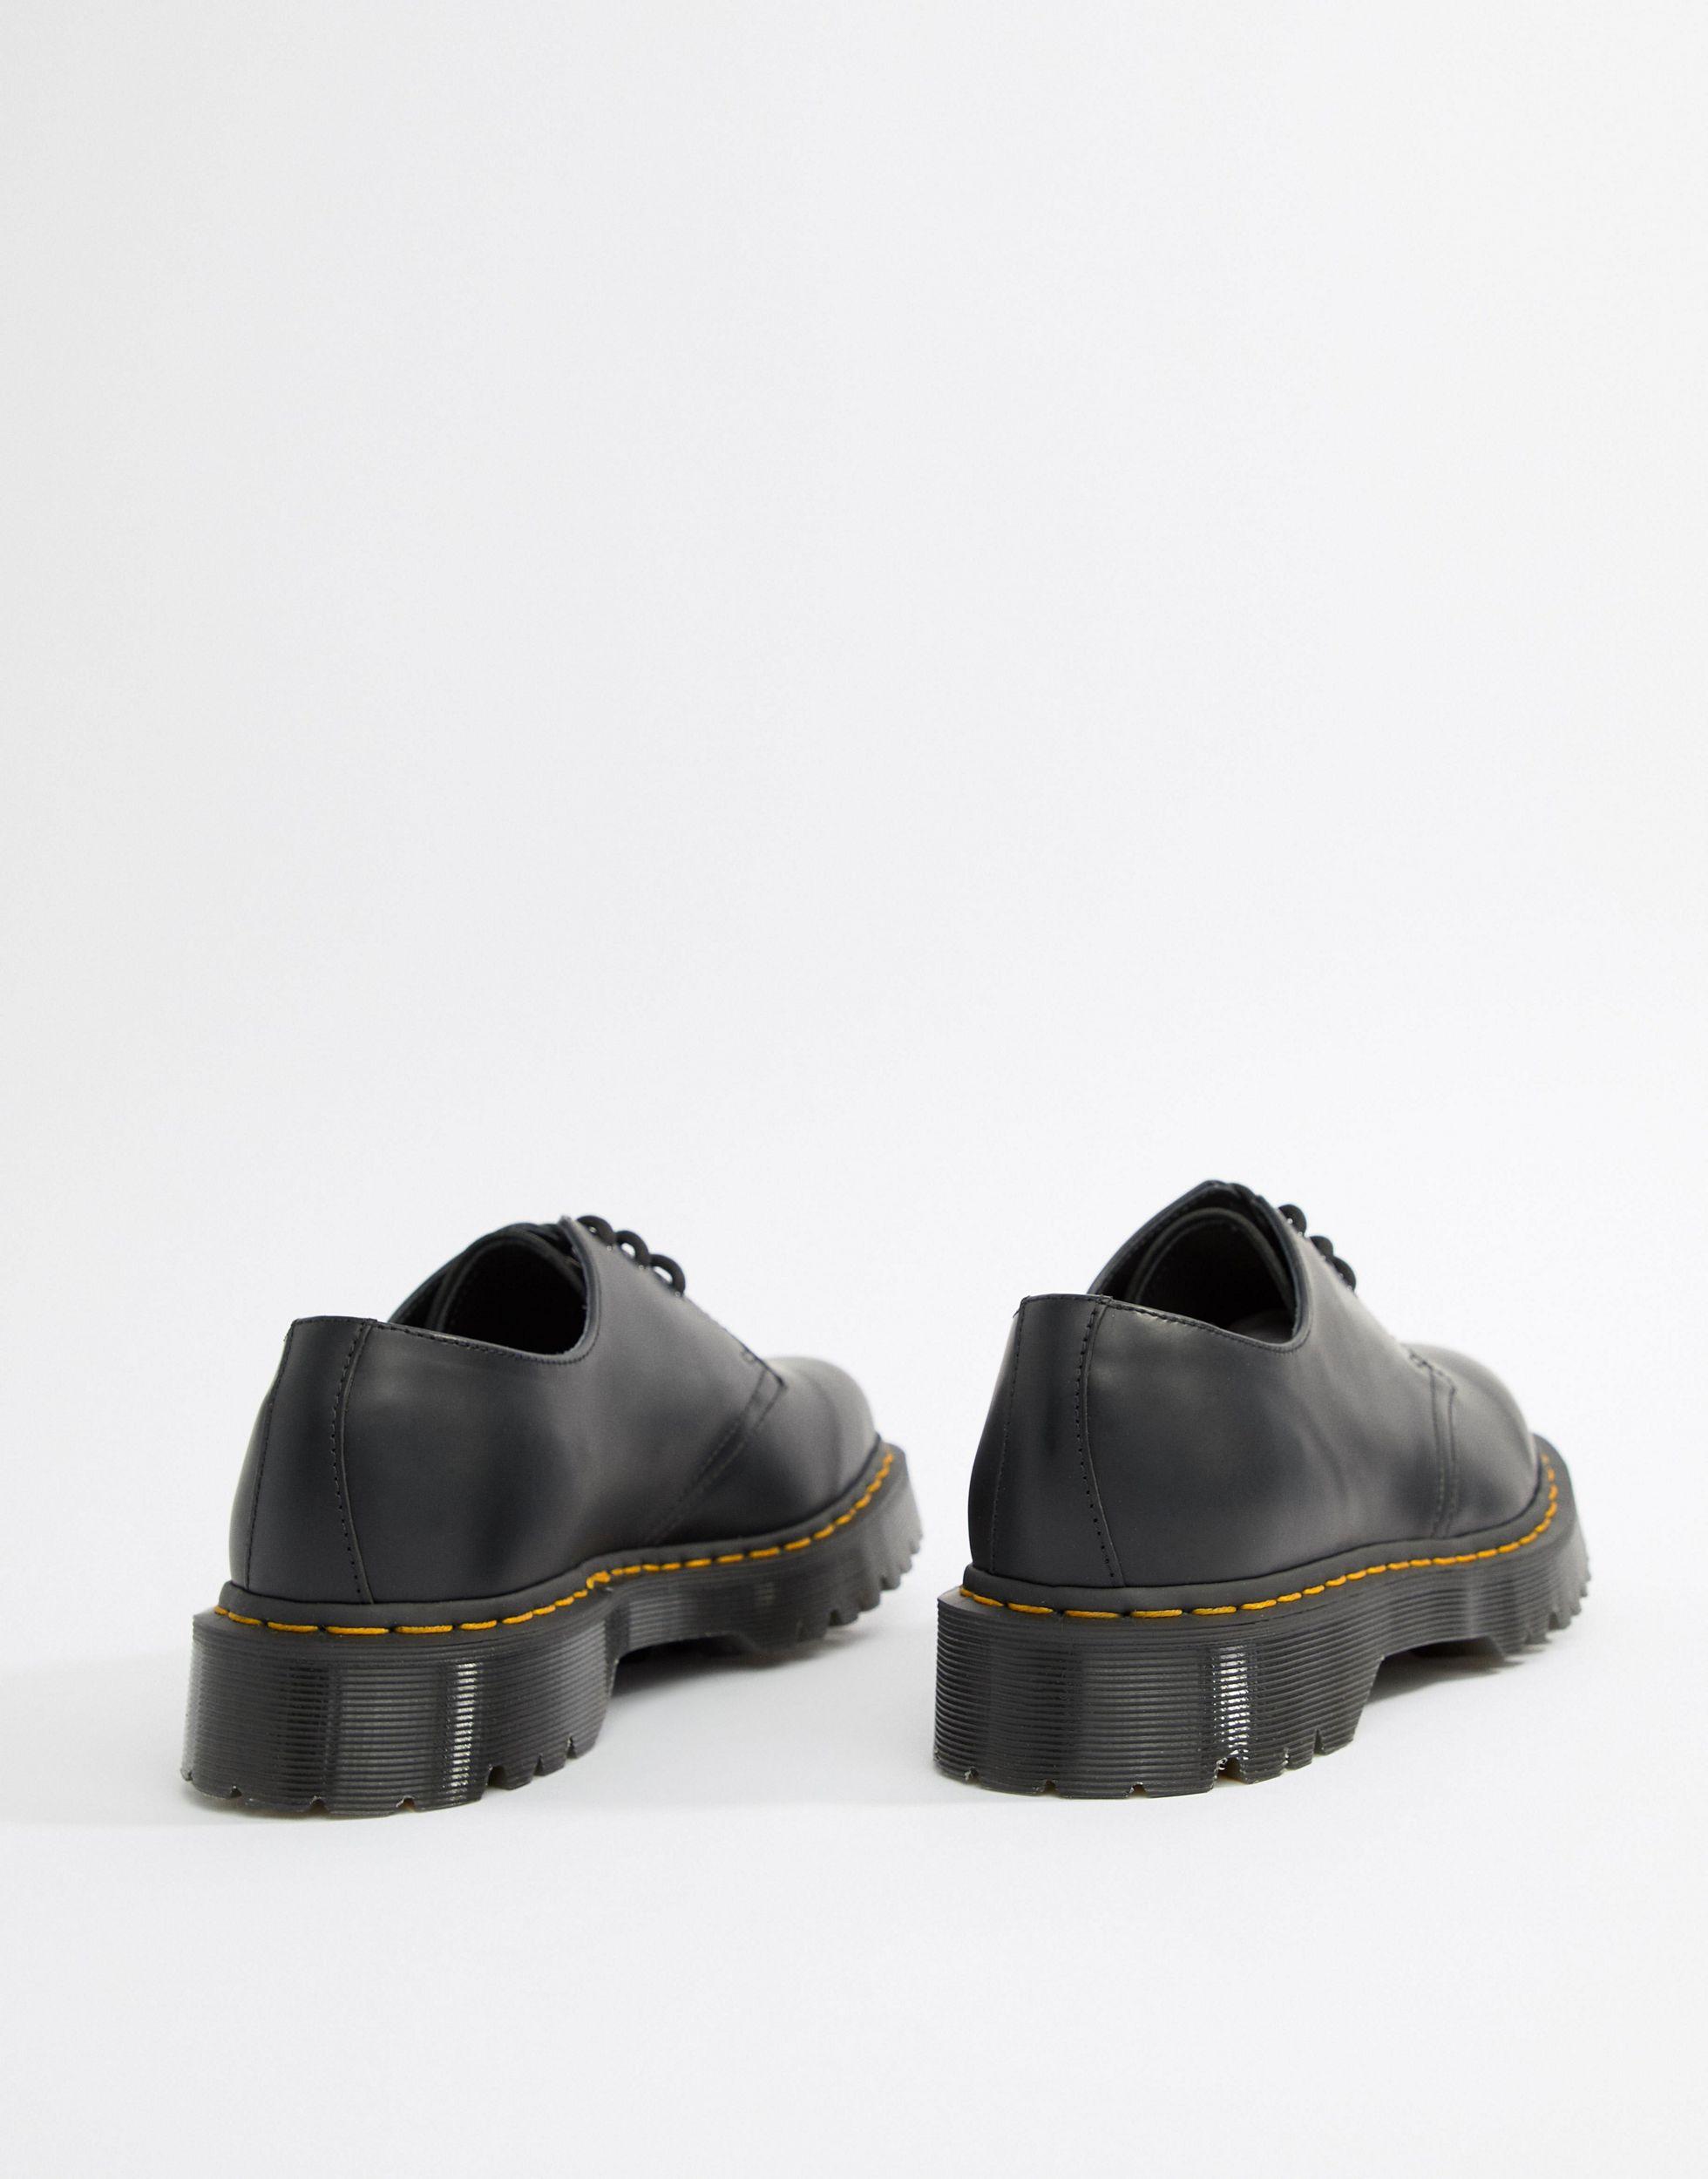 Dr. Martens 1461 Bex Platform 3-eye Shoes in Black for Men - Lyst